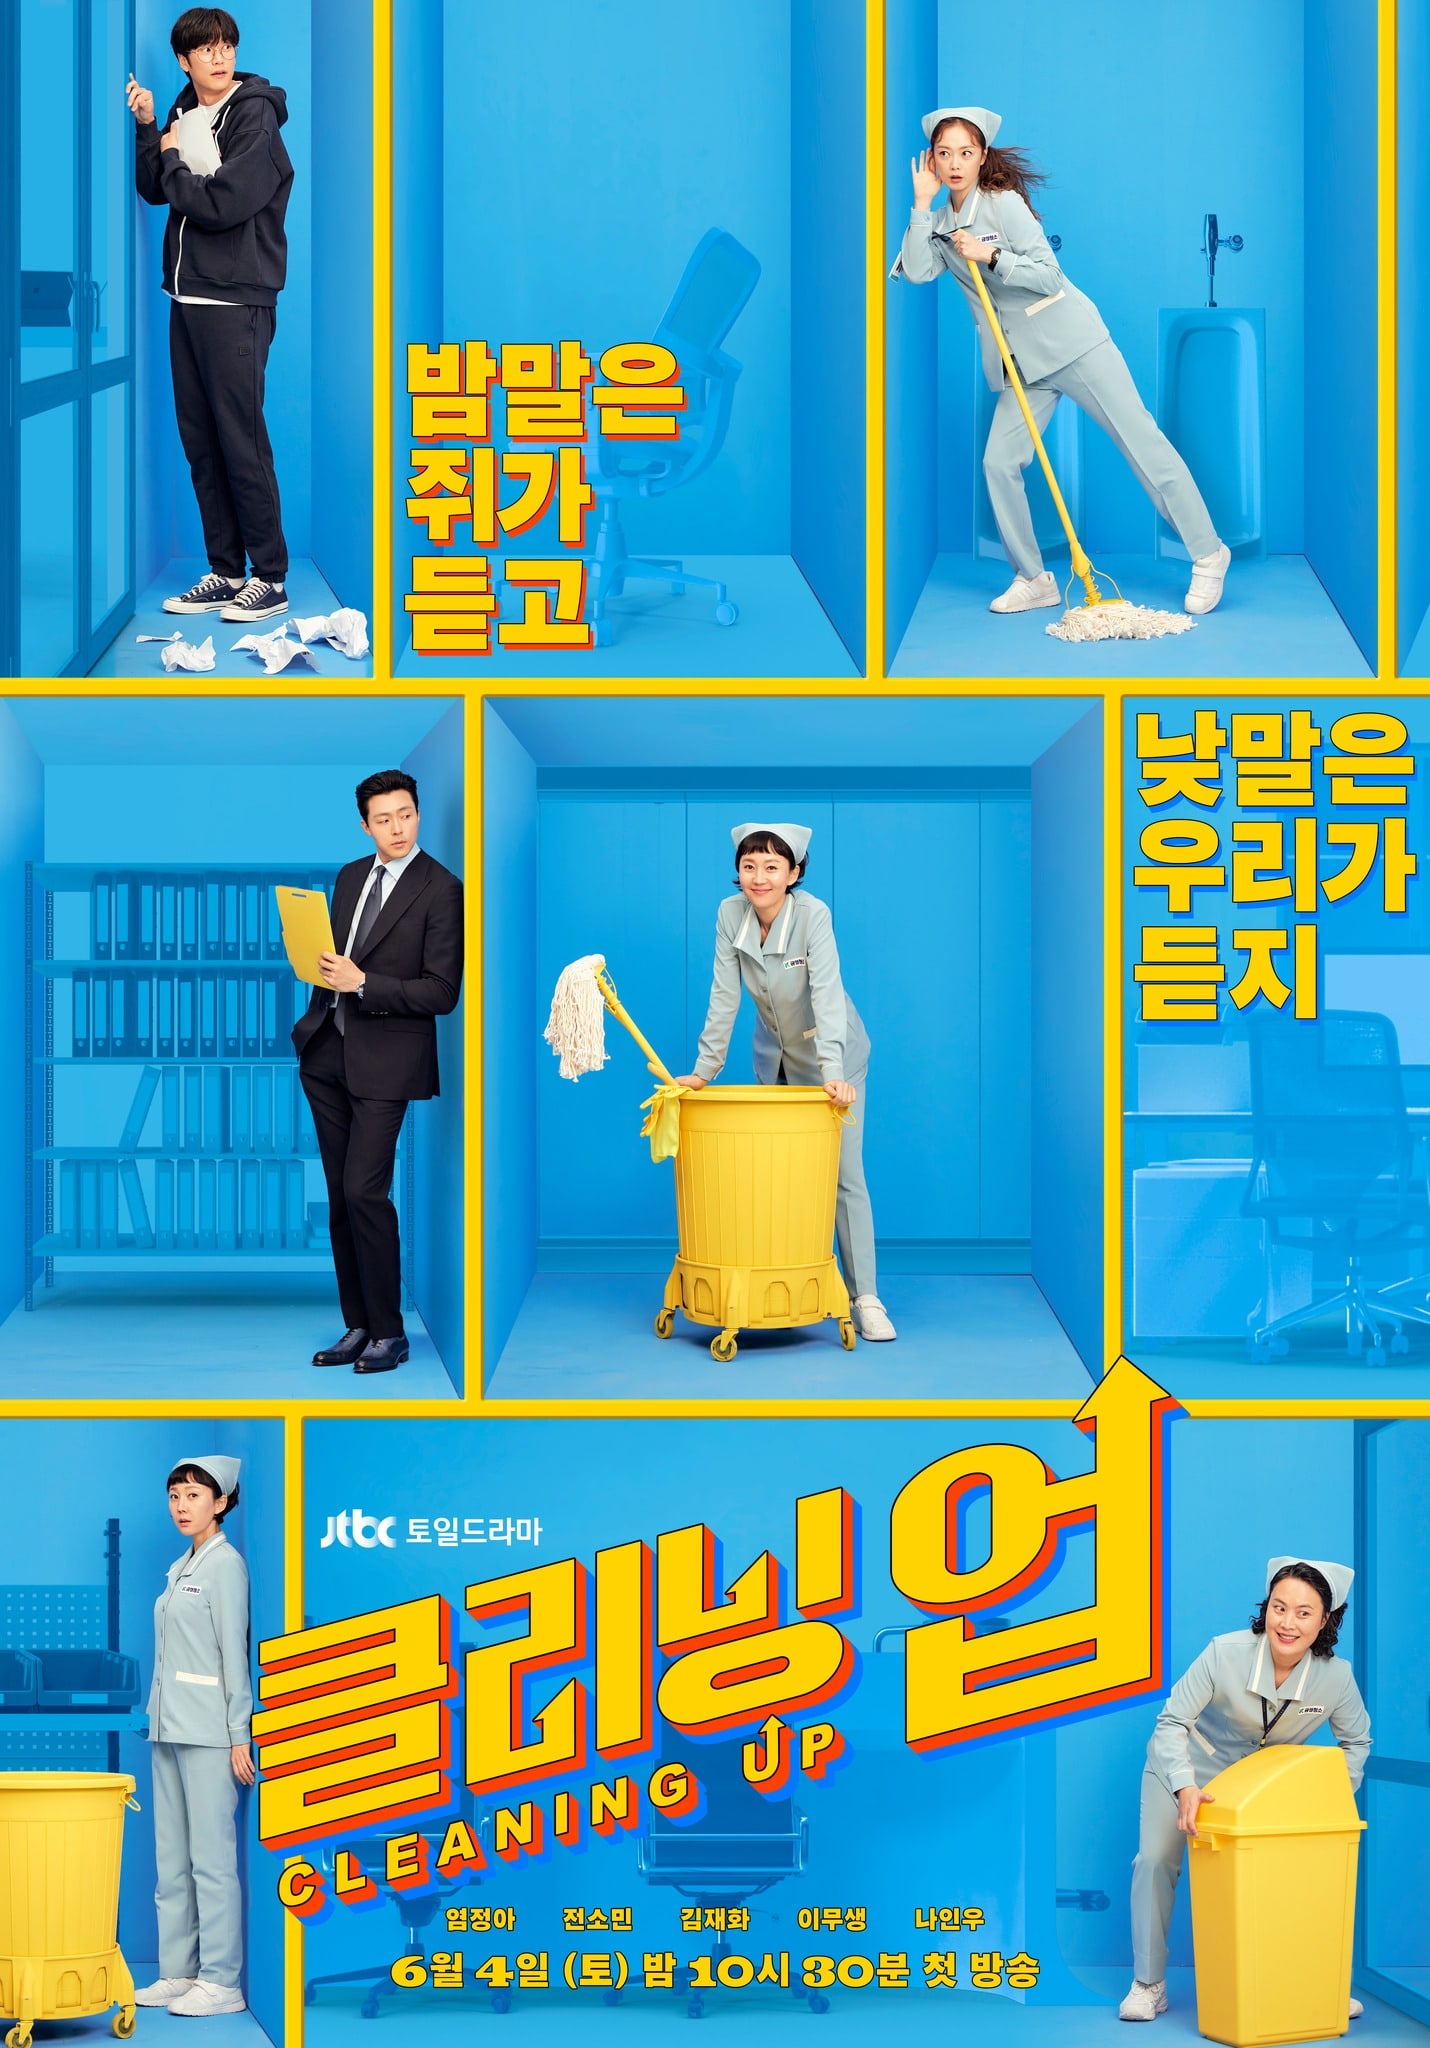 phim Hàn cleaning up poster bản hàn